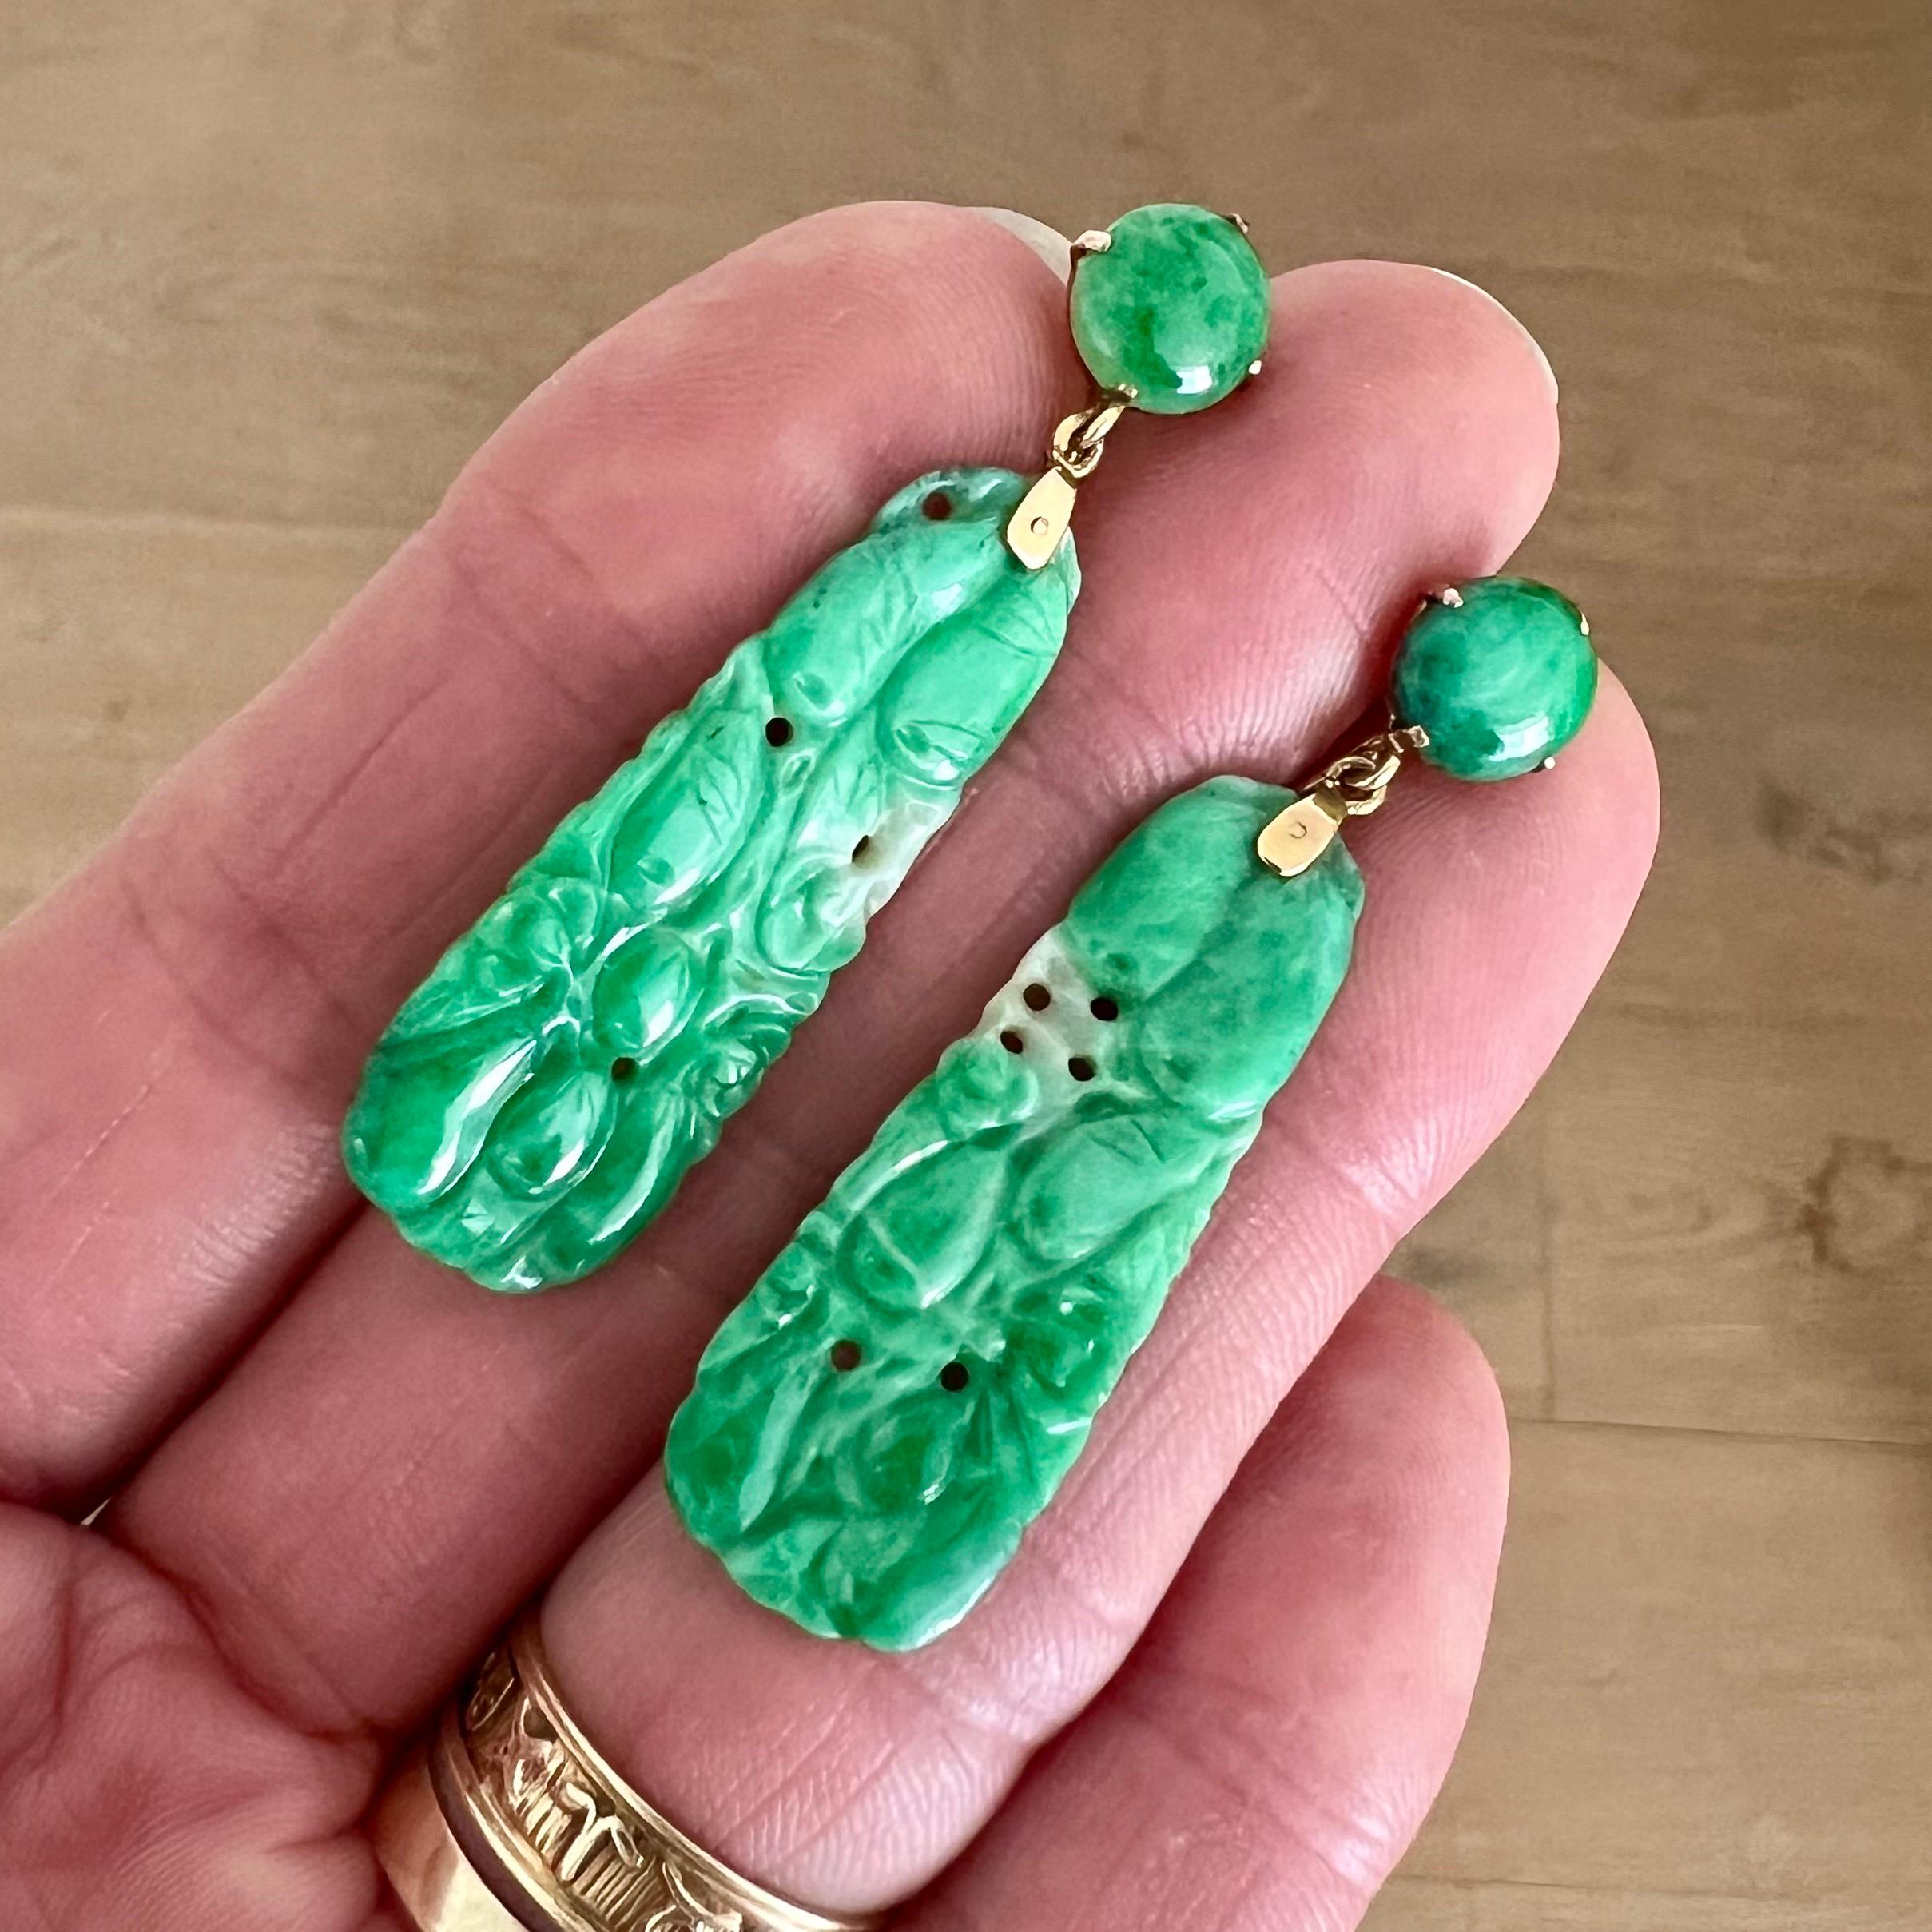 Ces magnifiques boucles d'oreilles en jade sculpté sont certifiées non traitées. Les boucles d'oreilles en jade sont réalisées en or 14 carats avec des panneaux de jade tacheté vert et blanc sculptés. Les boucles d'oreilles panneau en jadéite